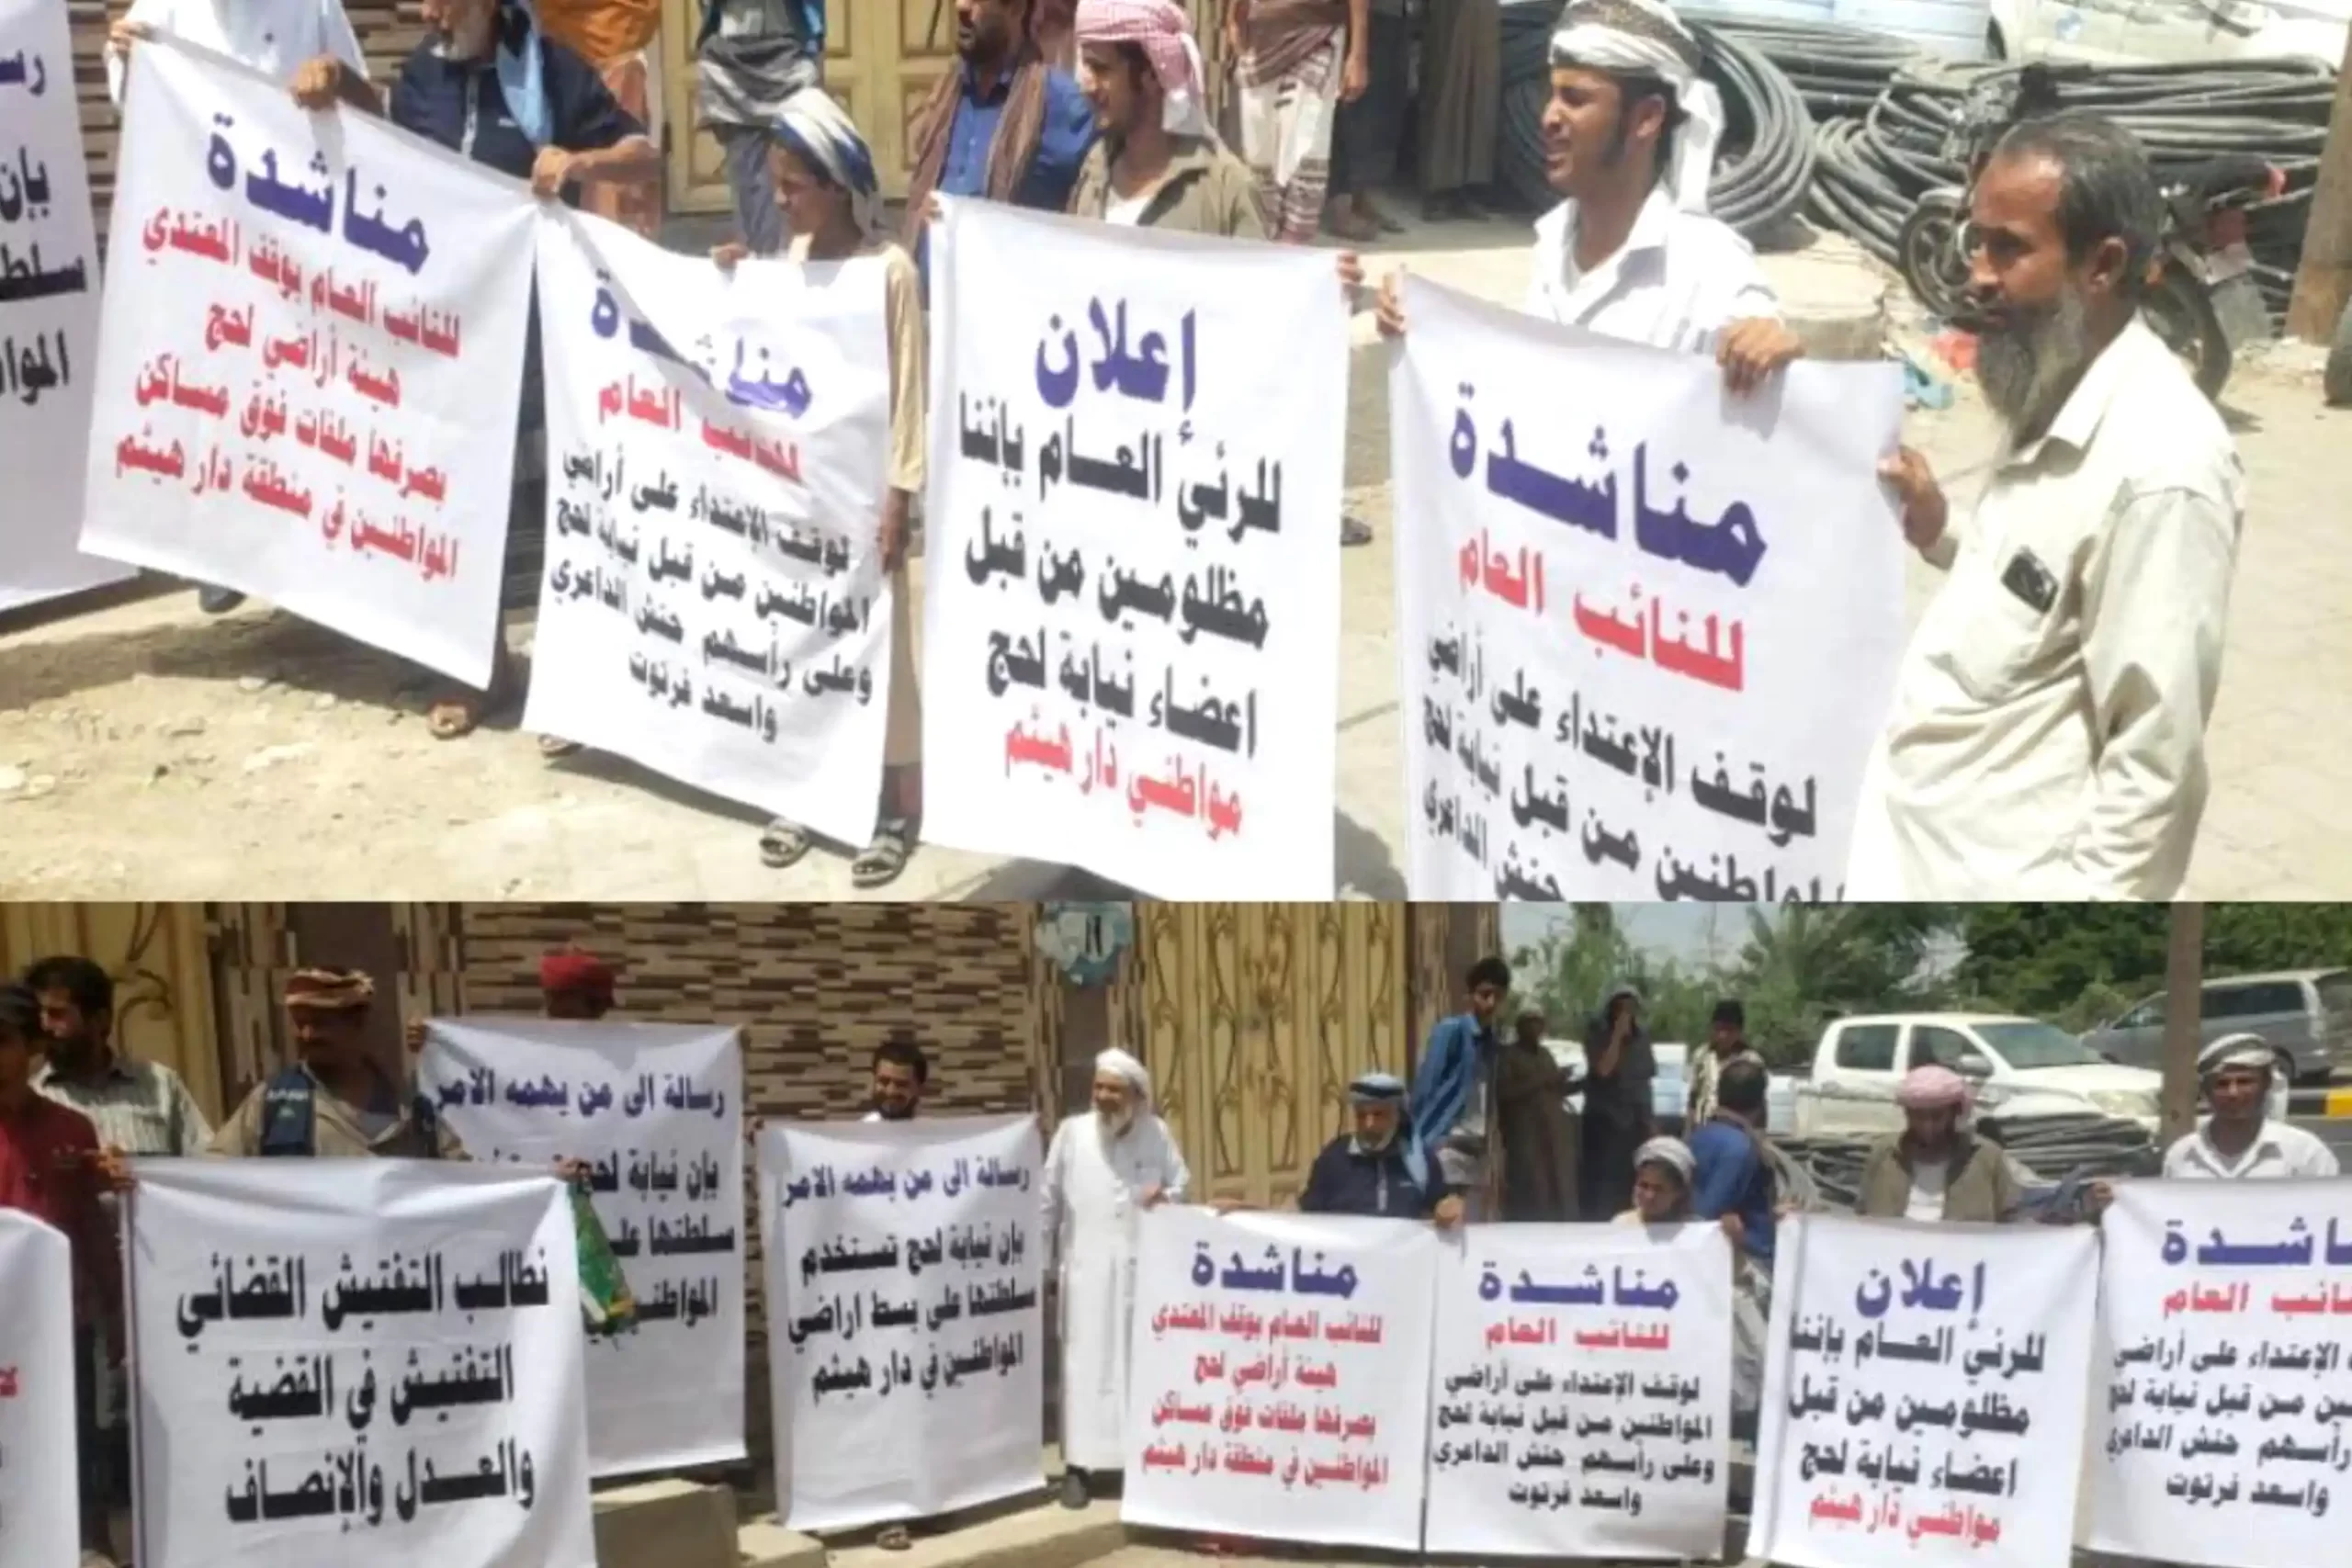 أهالي منطقة دار هيثم بلحج ينفدون وقفة إحتجاجية لوقف أعمال هدم وانتهاك حرمات  منازلهم